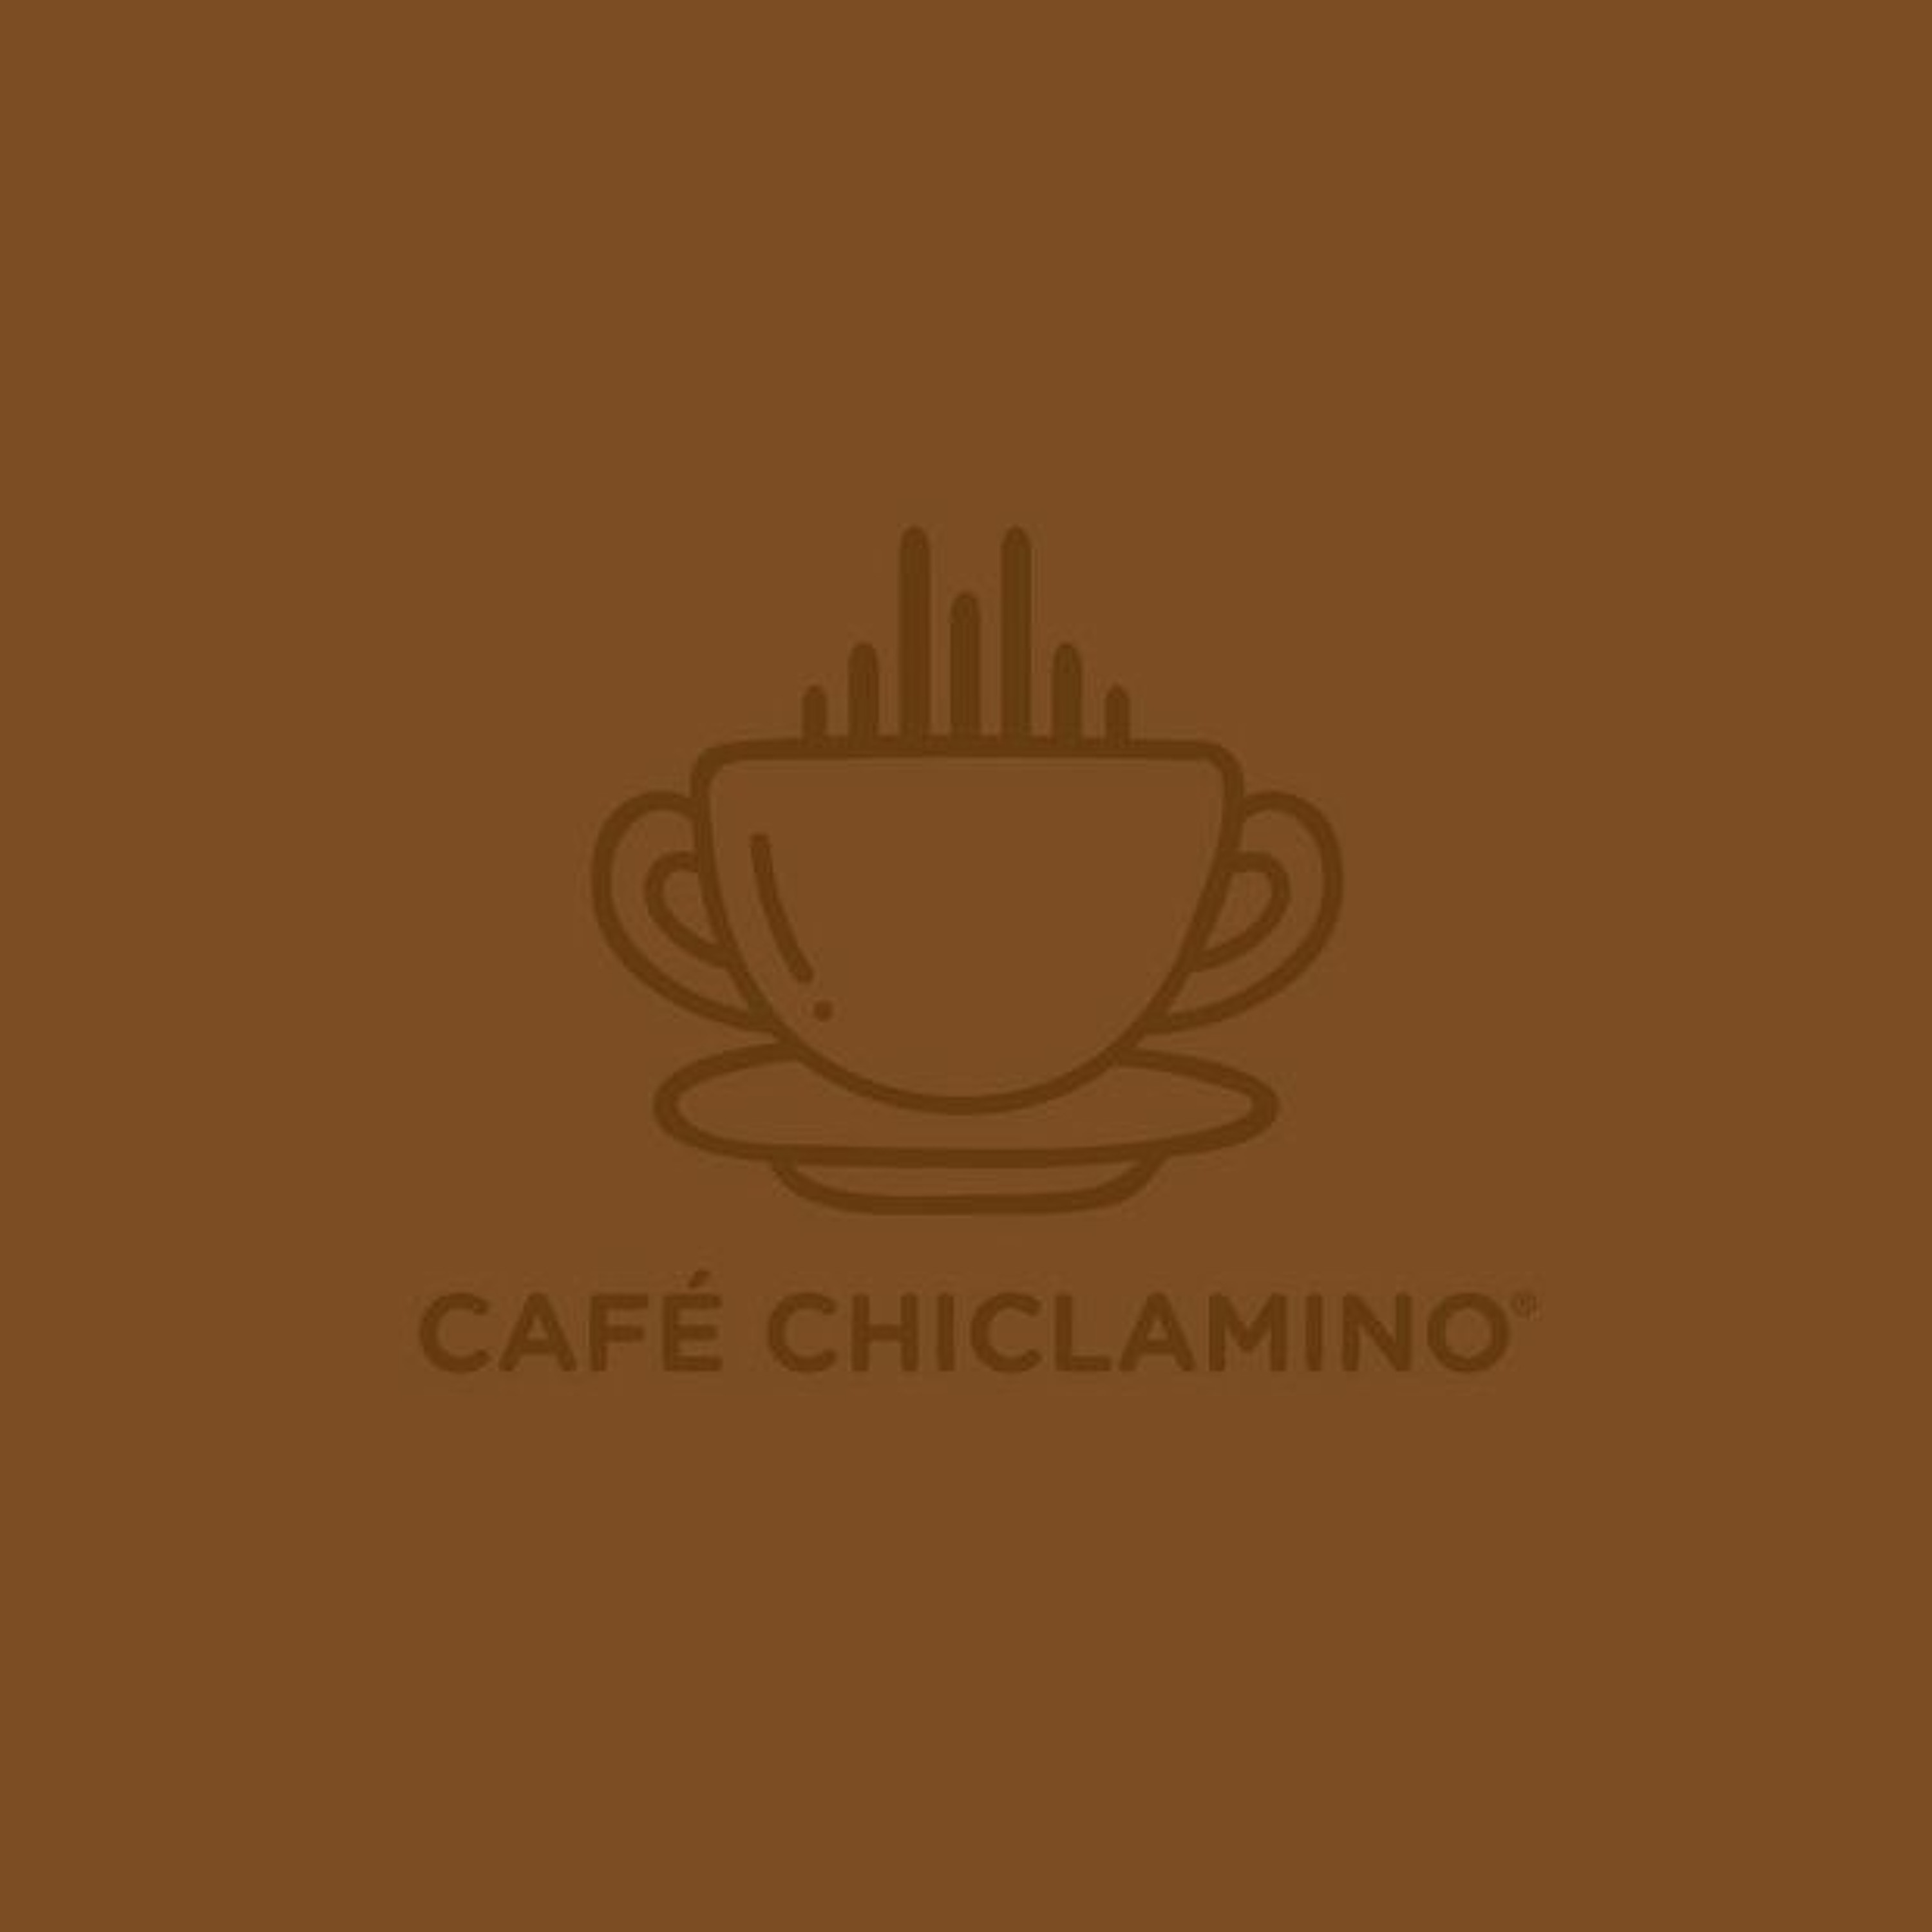 Café Chiclamino: El trabajo perfecto